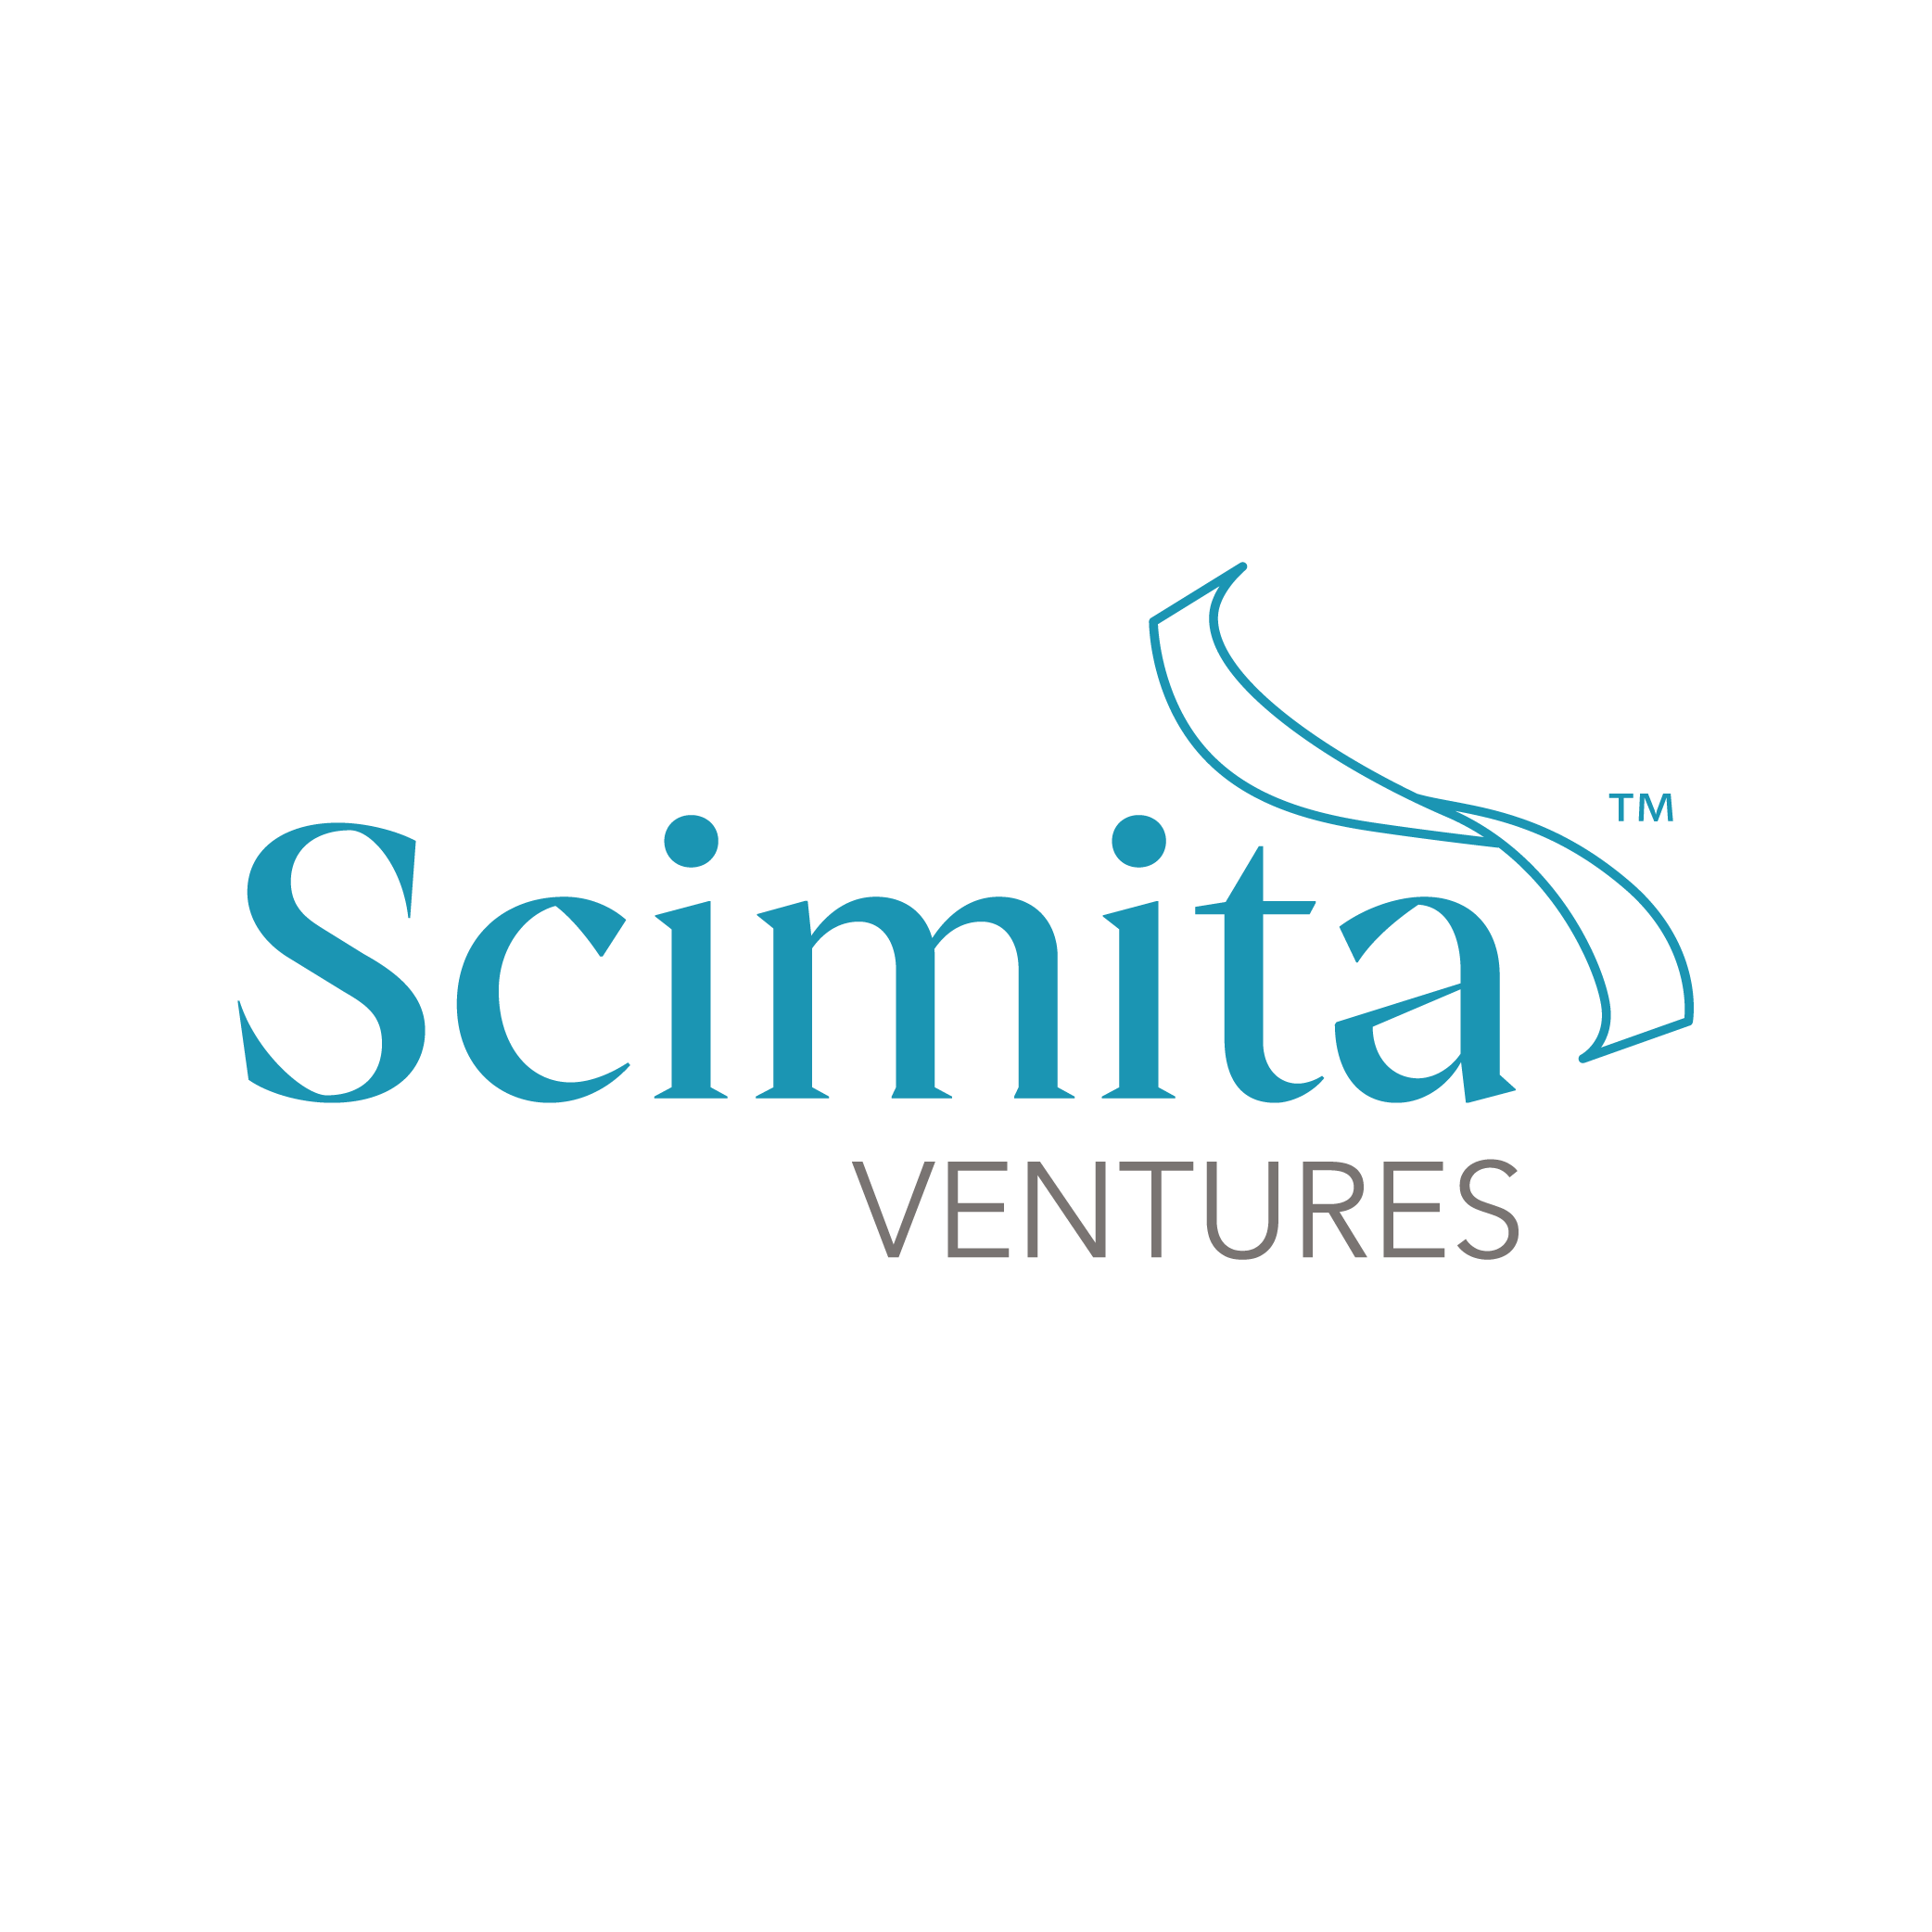 Scimita Ventures